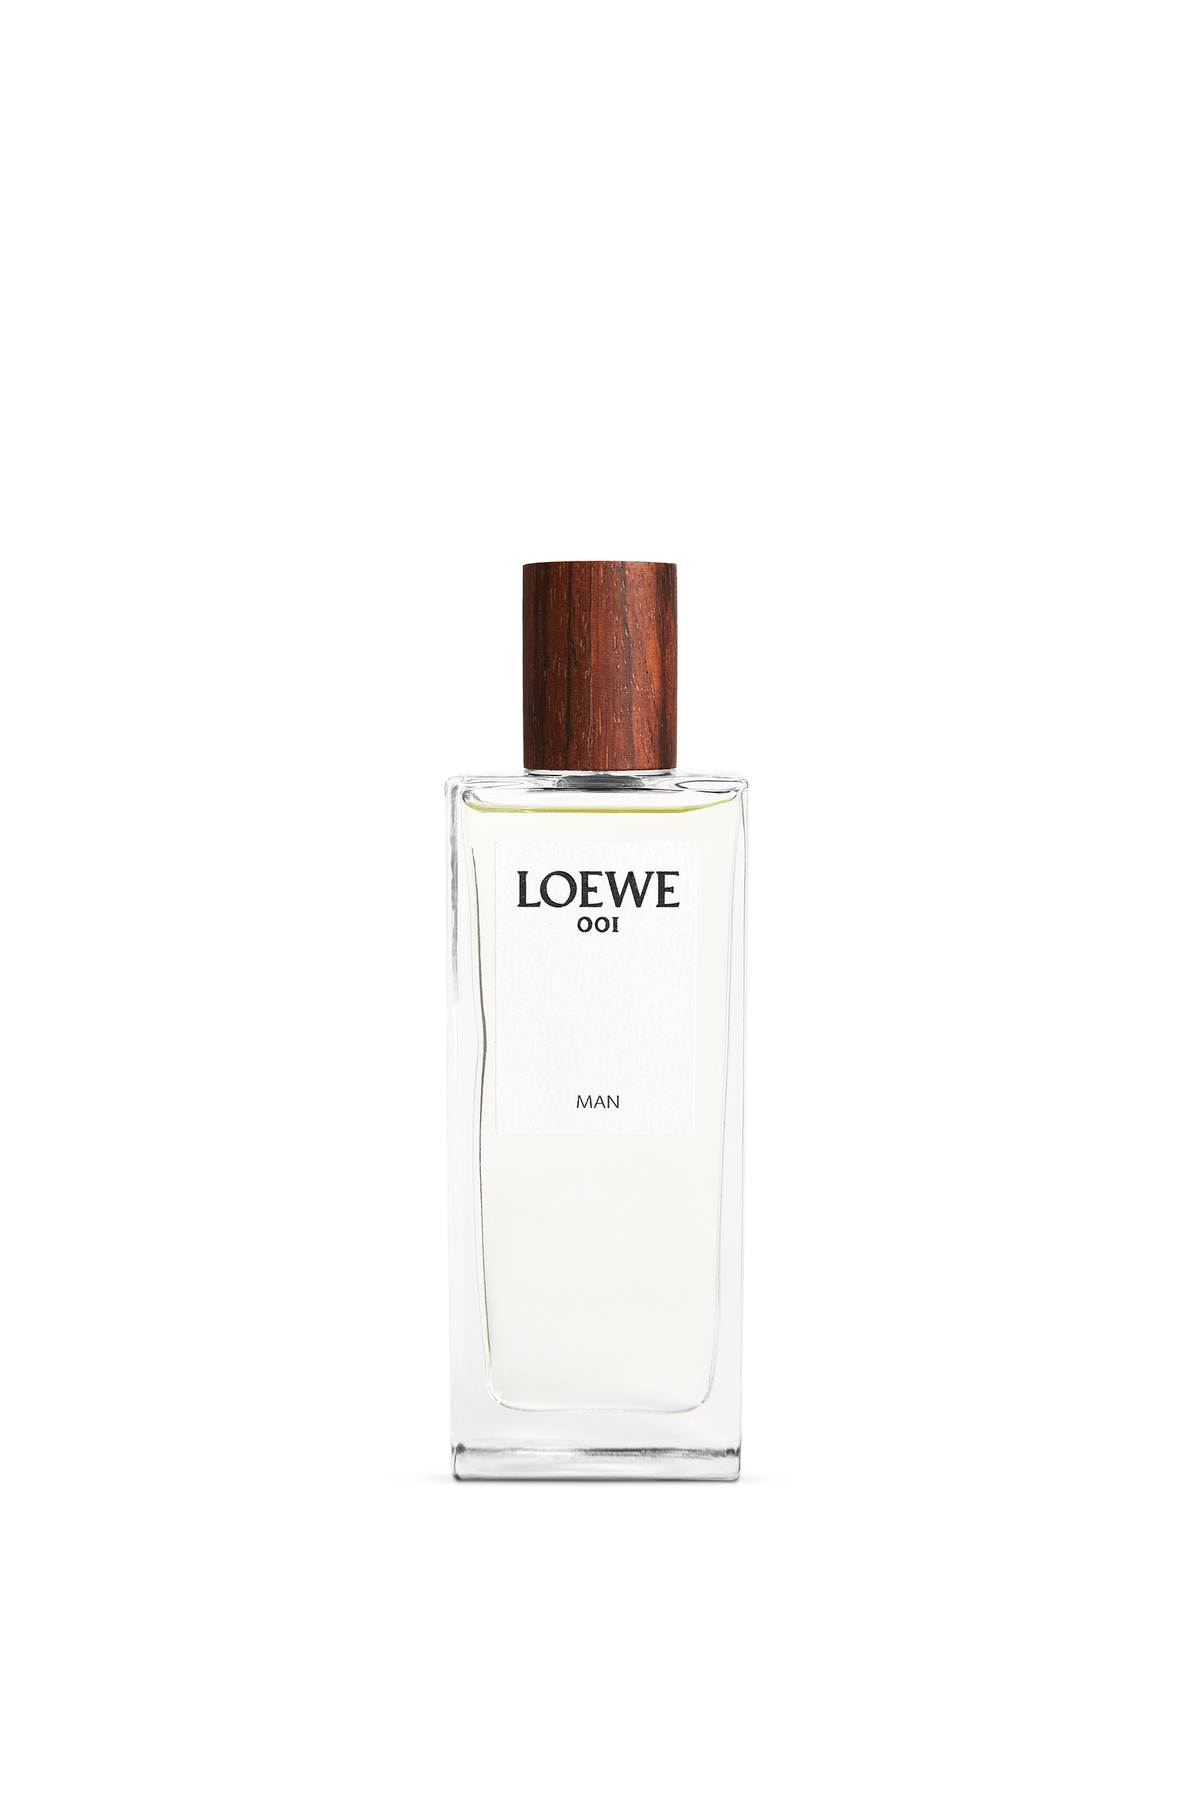 Loewe 001 Man Eau de Parfum 50ml - LOEWE